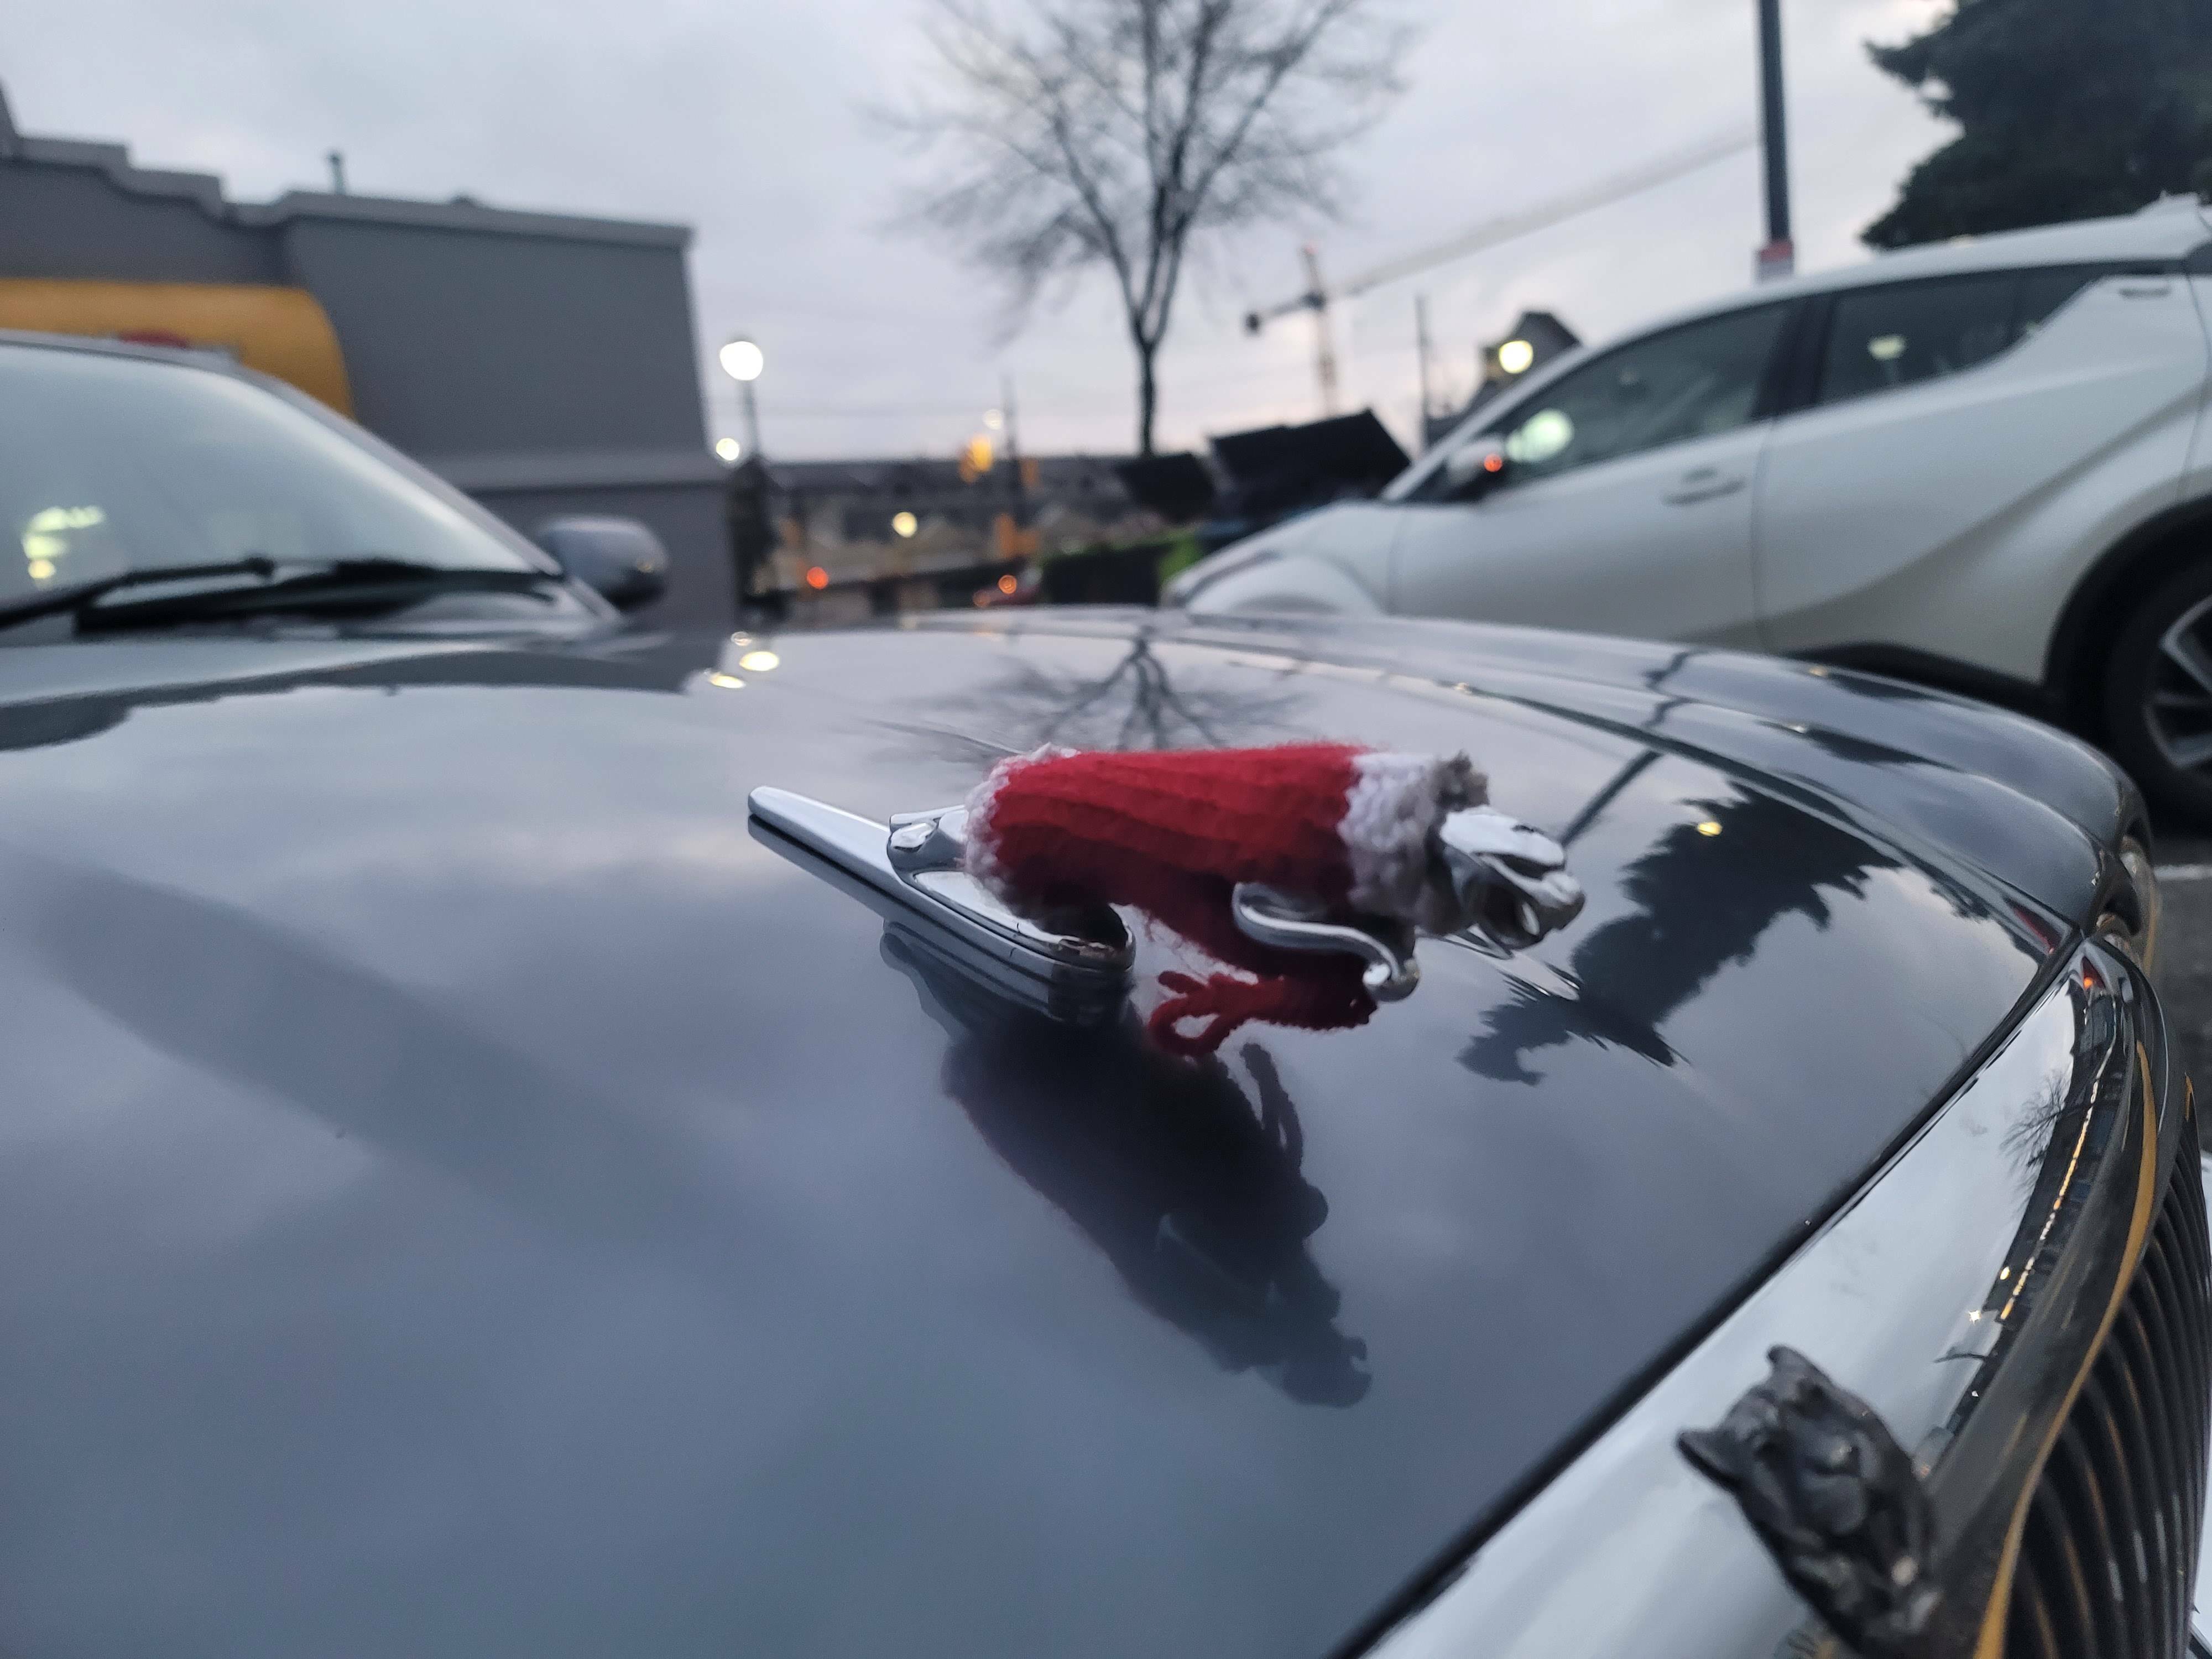 quelqu'un a tricoté un pull-over pour l'emblème de sa voiture